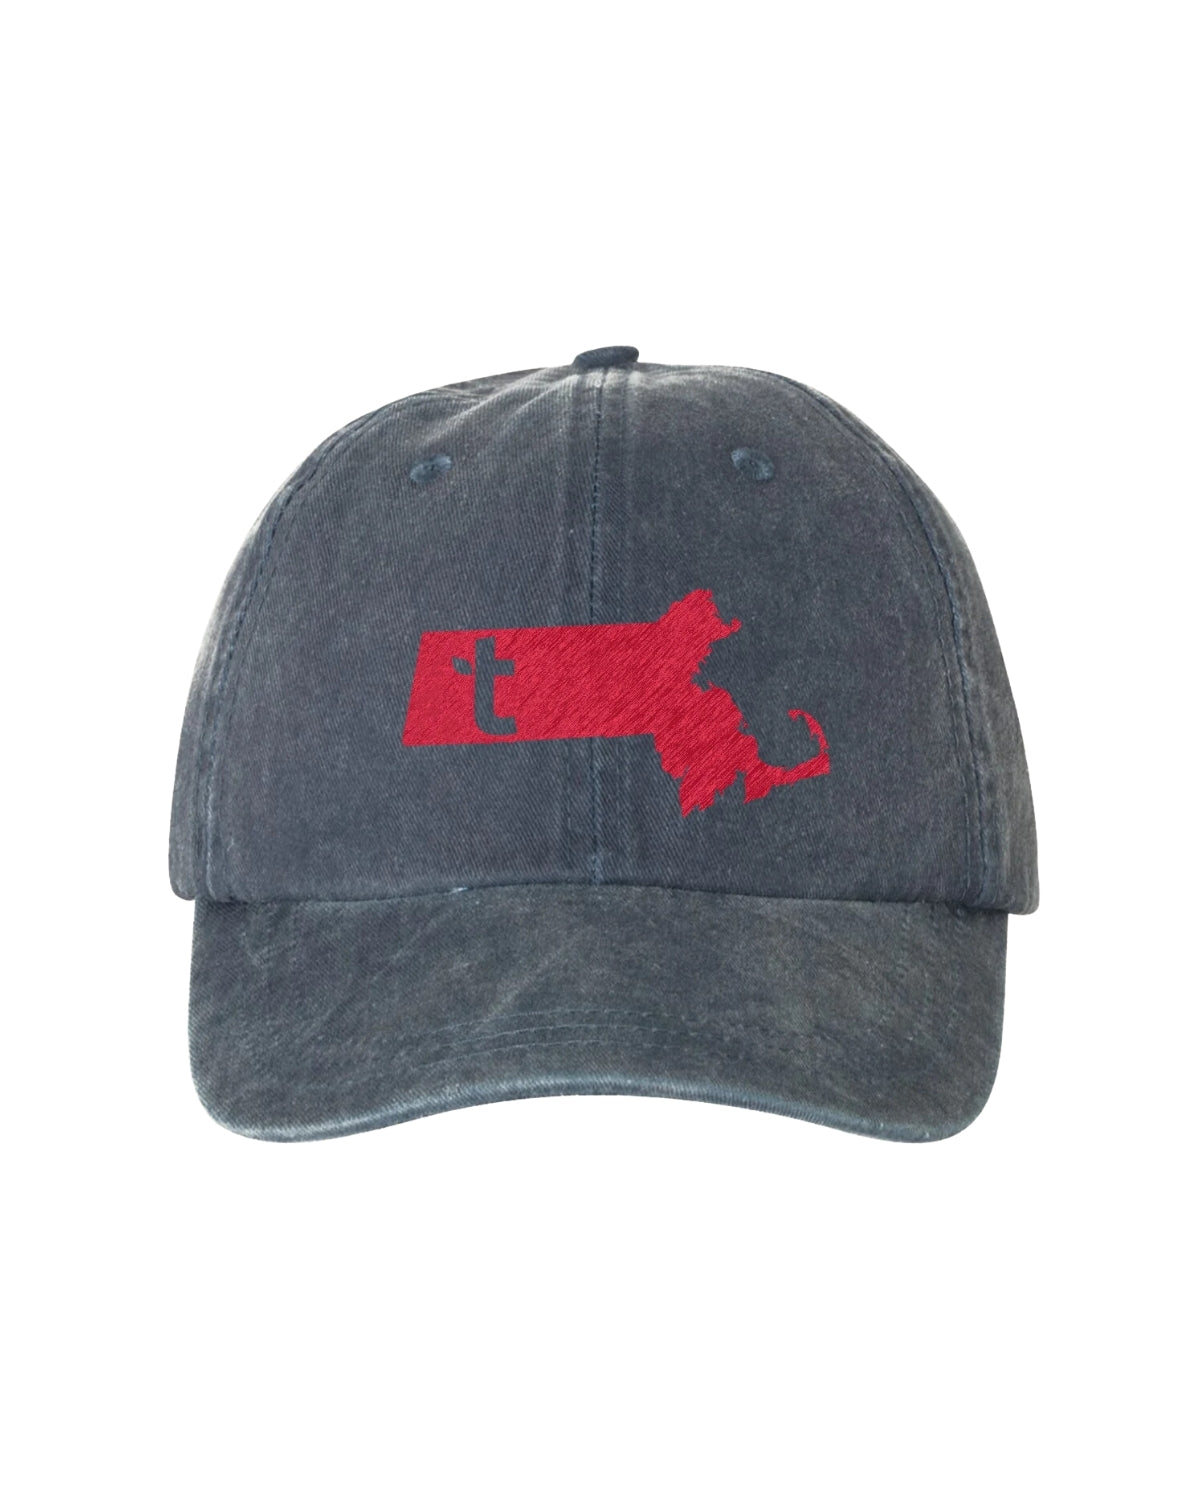 Trustees Massachusetts Hat